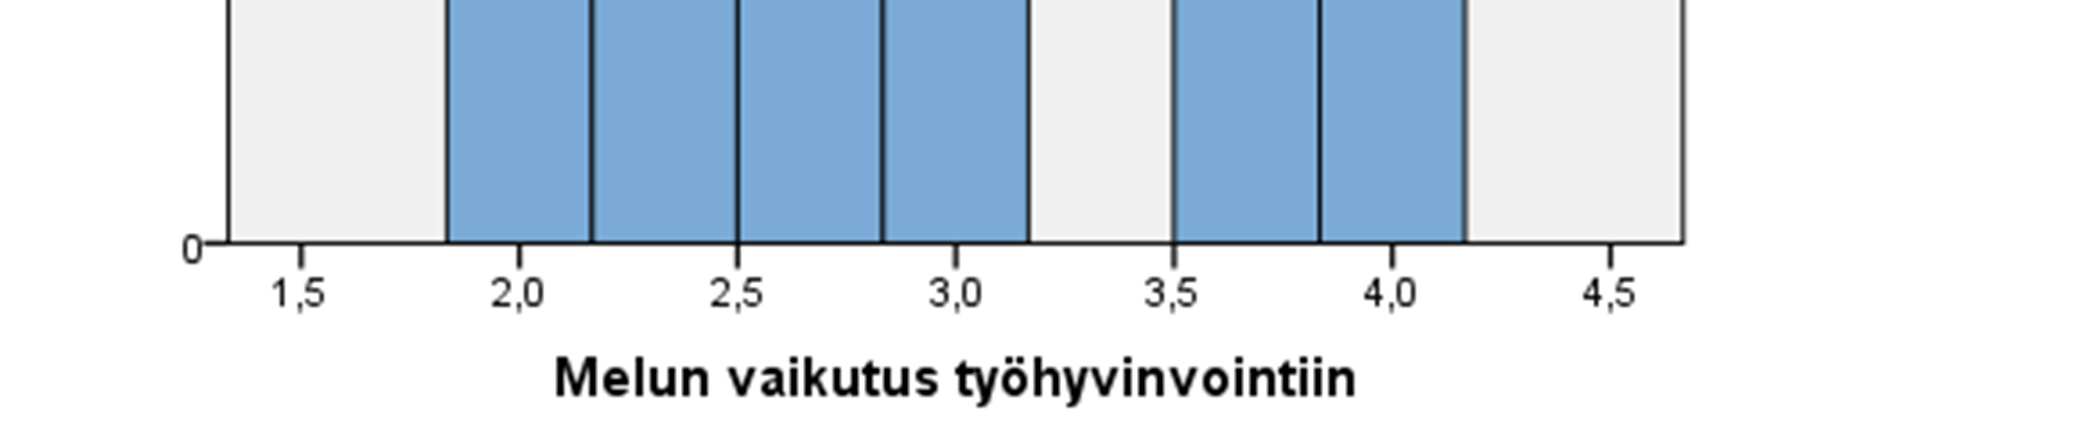 63 immuuni melun vaikutuksille. Tulokset jakaantuivat melko tasaisesti vaihtoehtojen melko vähän ja melko paljon kesken. KUVIO 8.